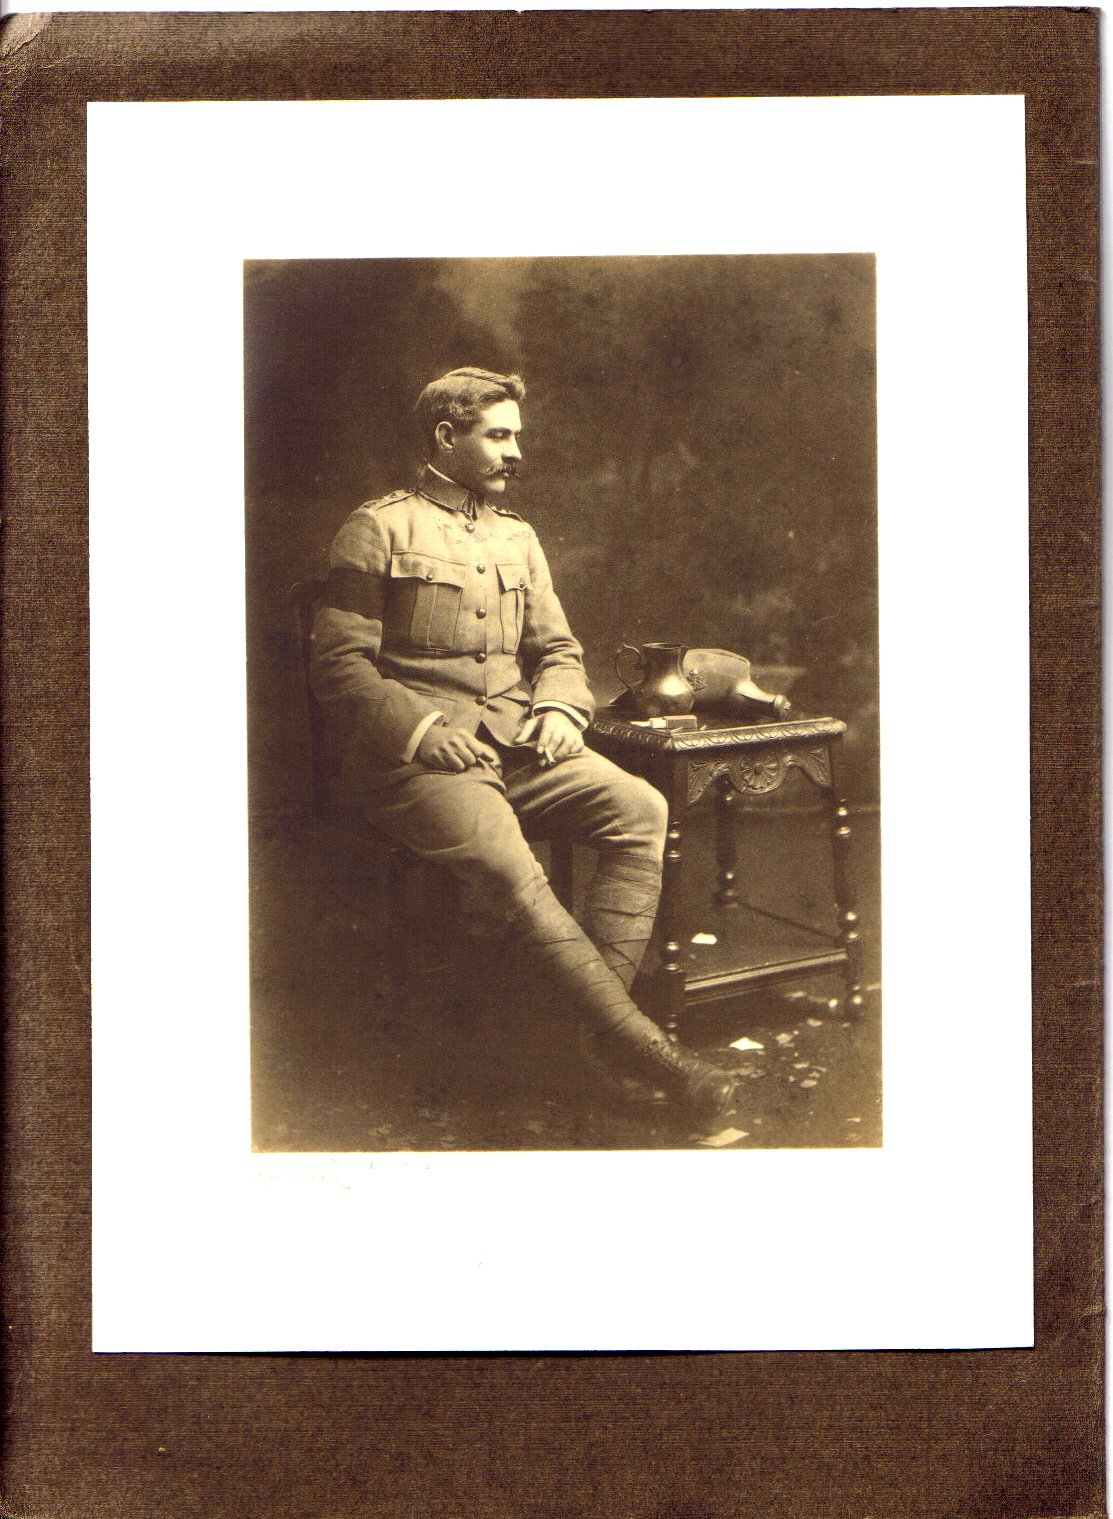 ARTHUR, Beckham Paikawa. 111. Serjeant KEH. 2nd Troop, 'A' Squadron. Boer War service photograph